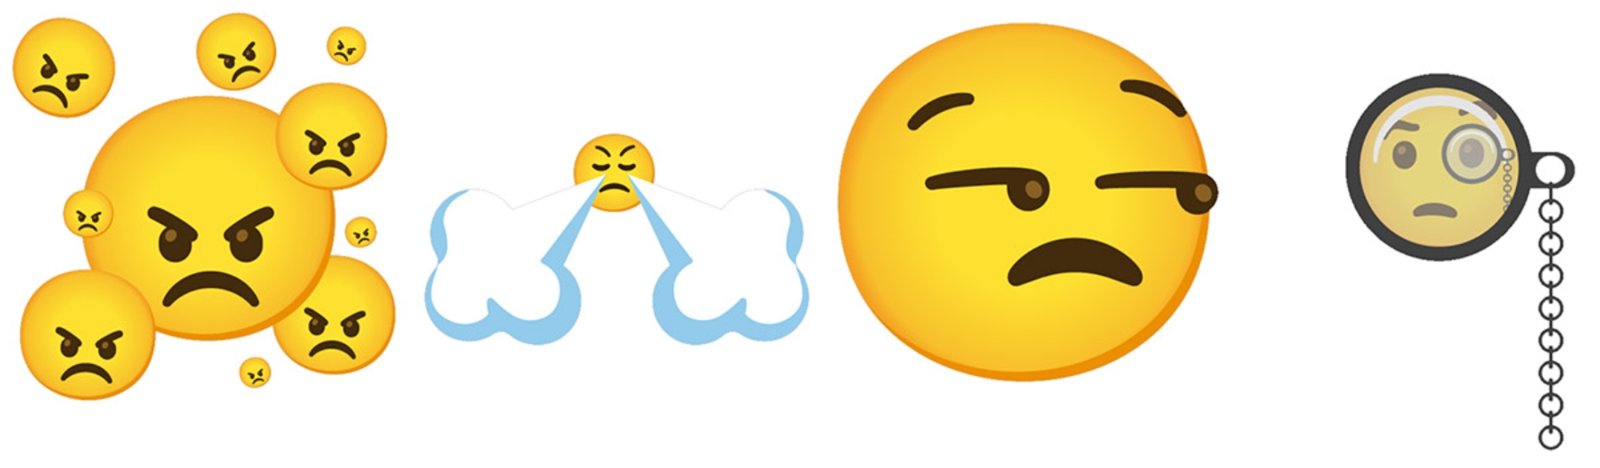 Gboard 6 combo emojis